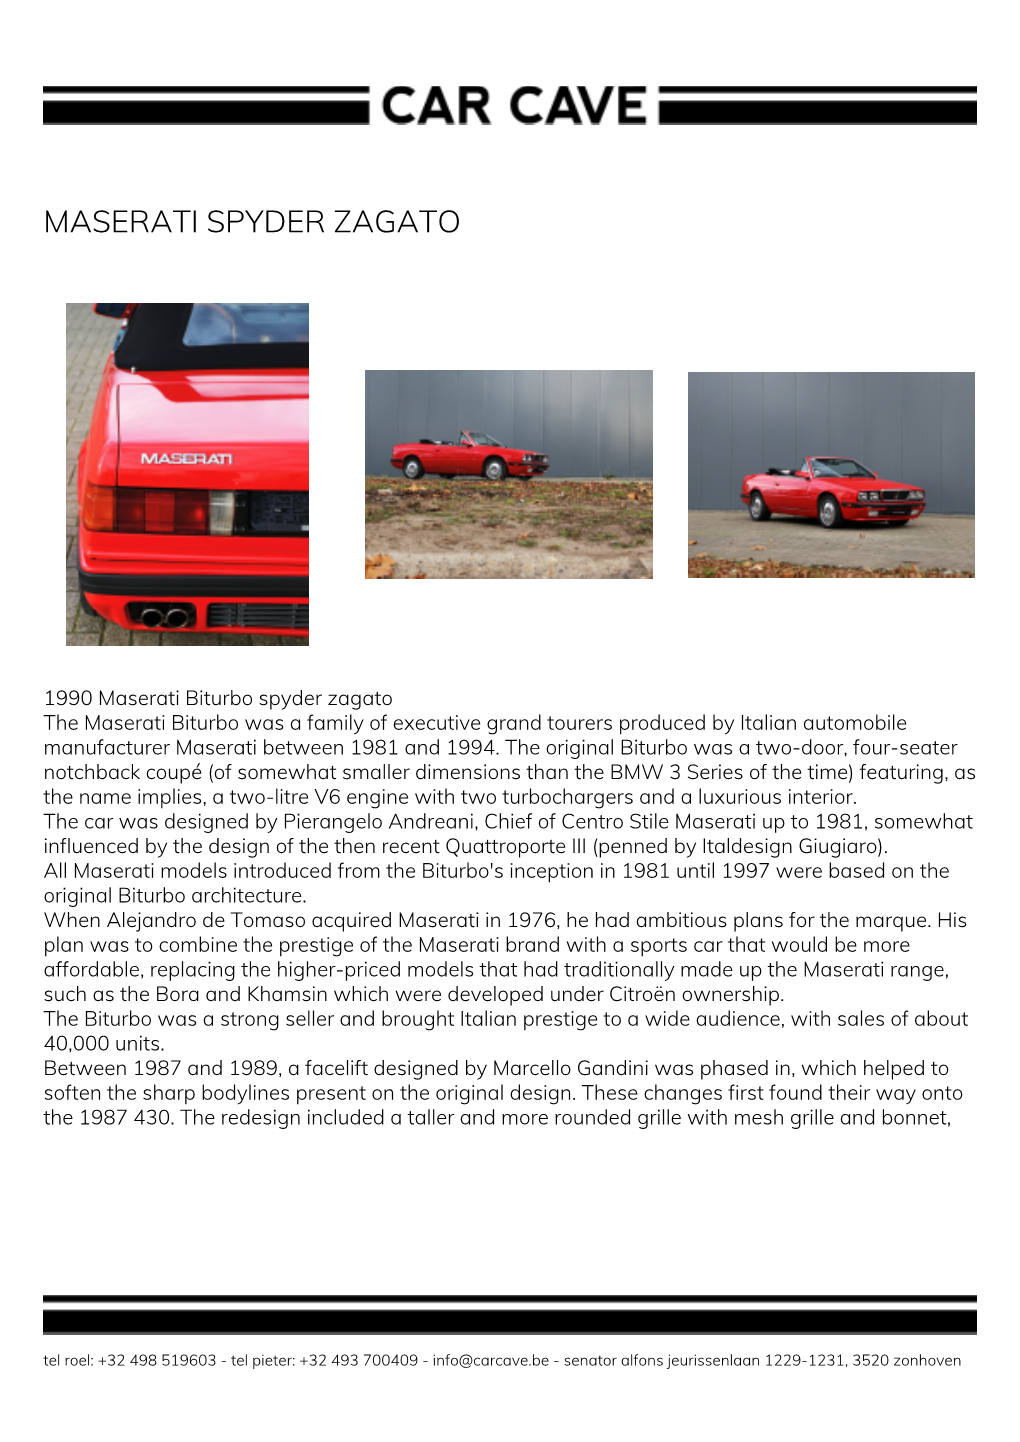 Maserati Spyder Zagato